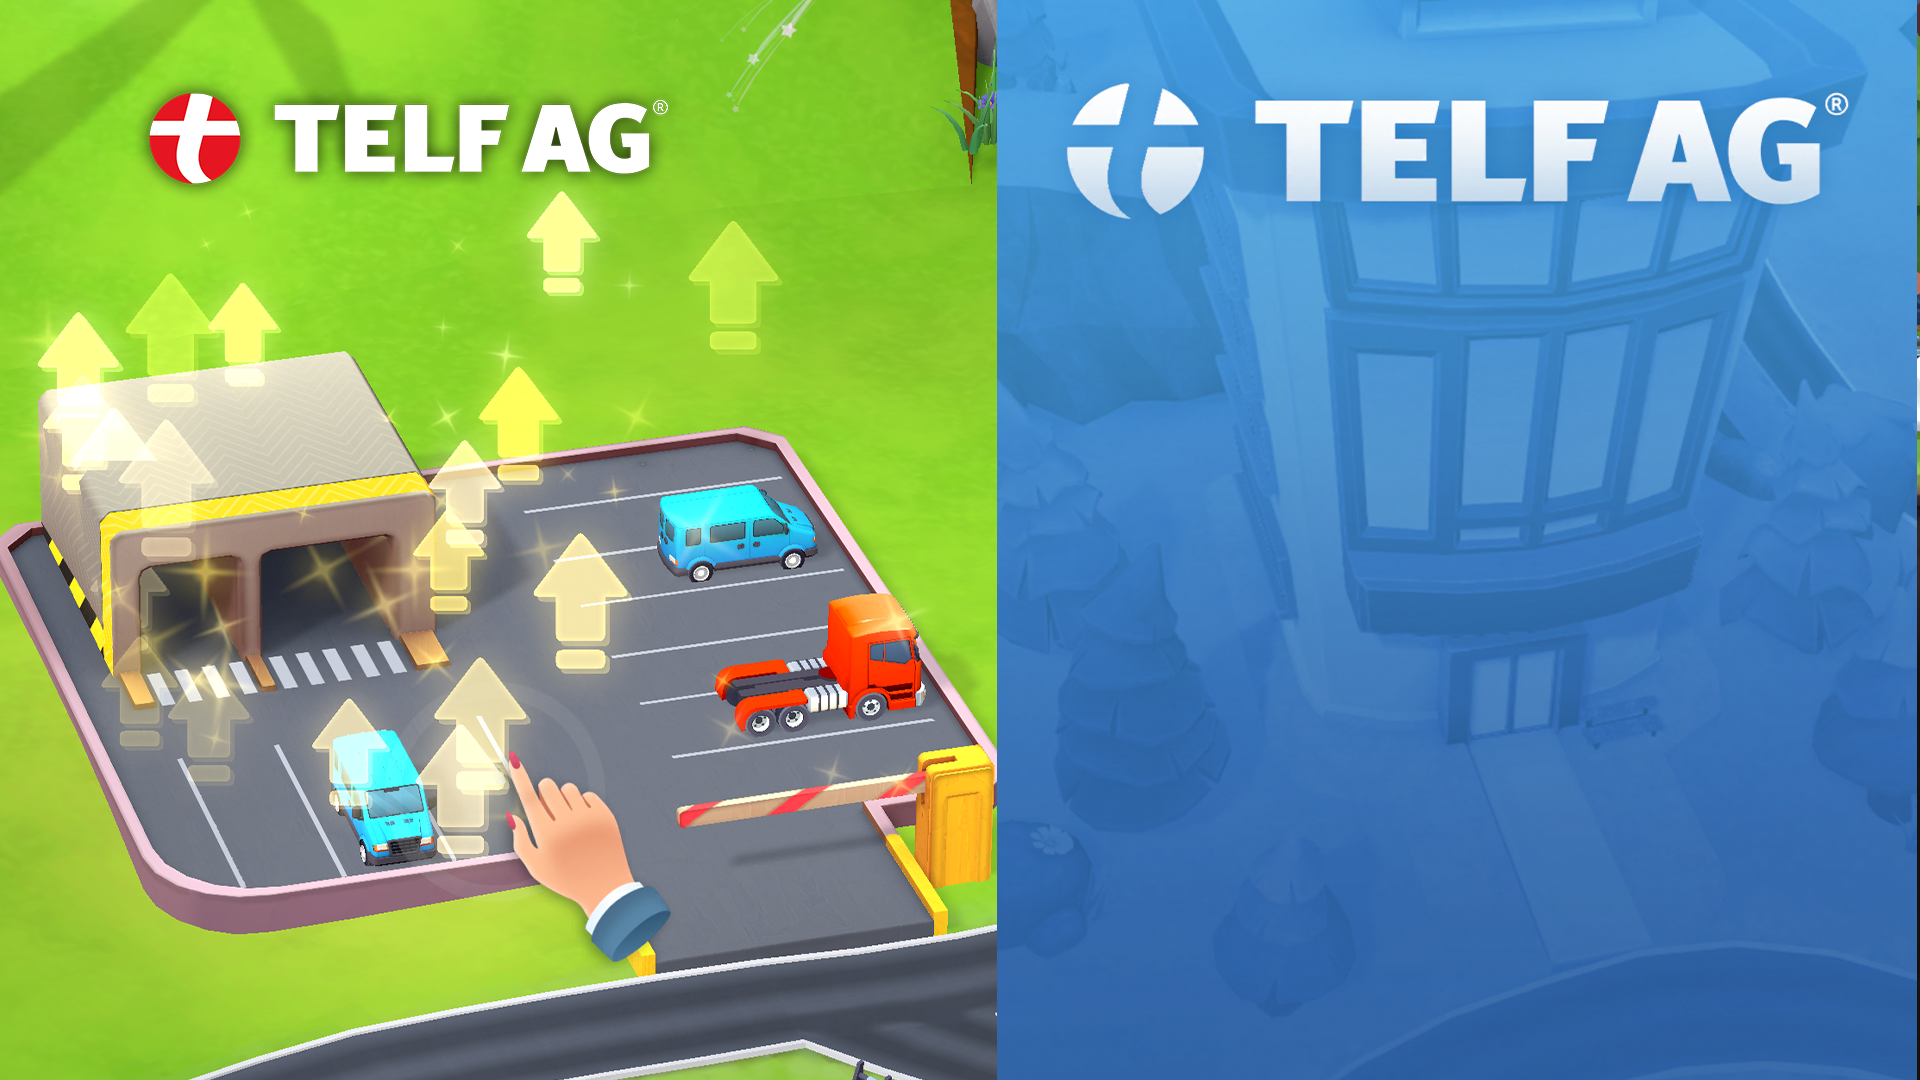 фото: Telf AG: ваш путь к успеху начинается здесь и сейчас с уникальной стратегической игрой